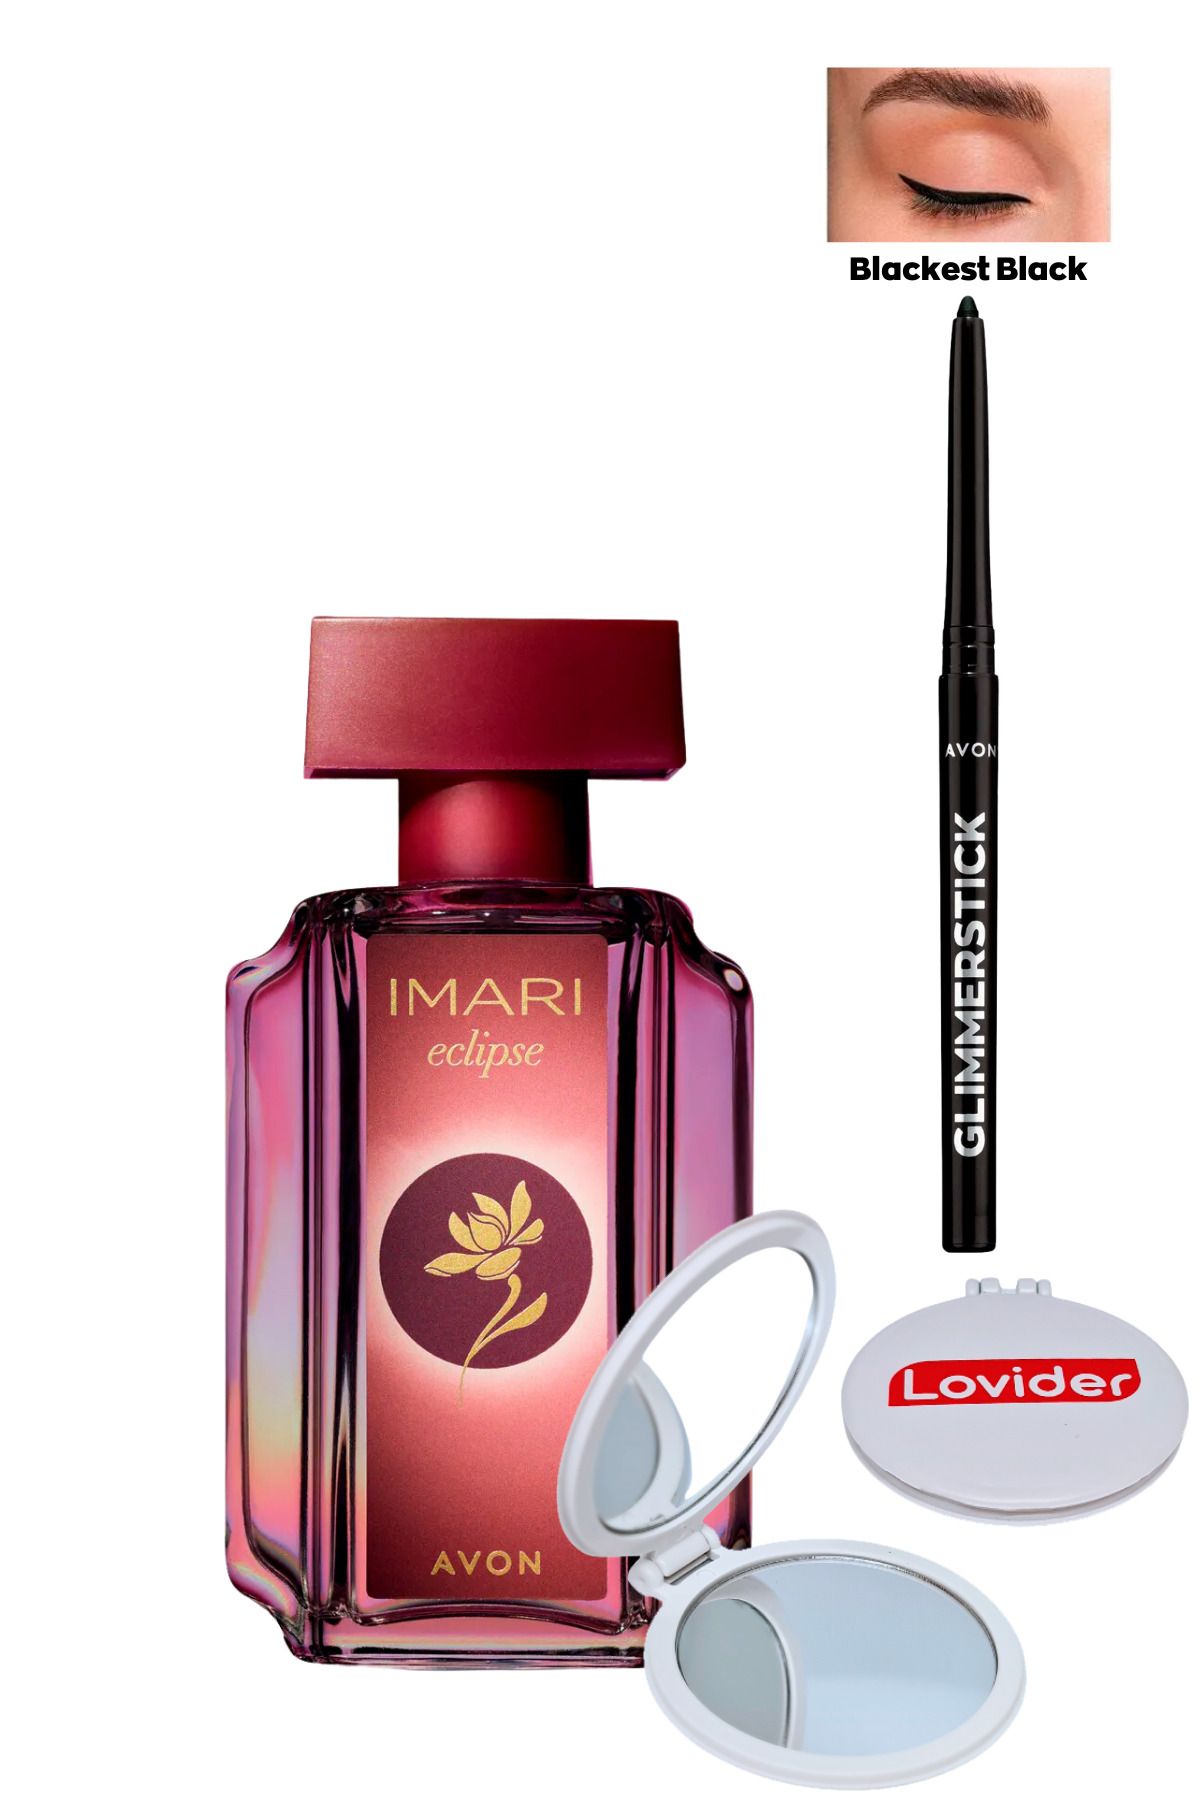 Avon Imari Eclipse Kadın Parfüm EDT 50ml + Siyah Göz Kalemi + Lovider Cep Aynası